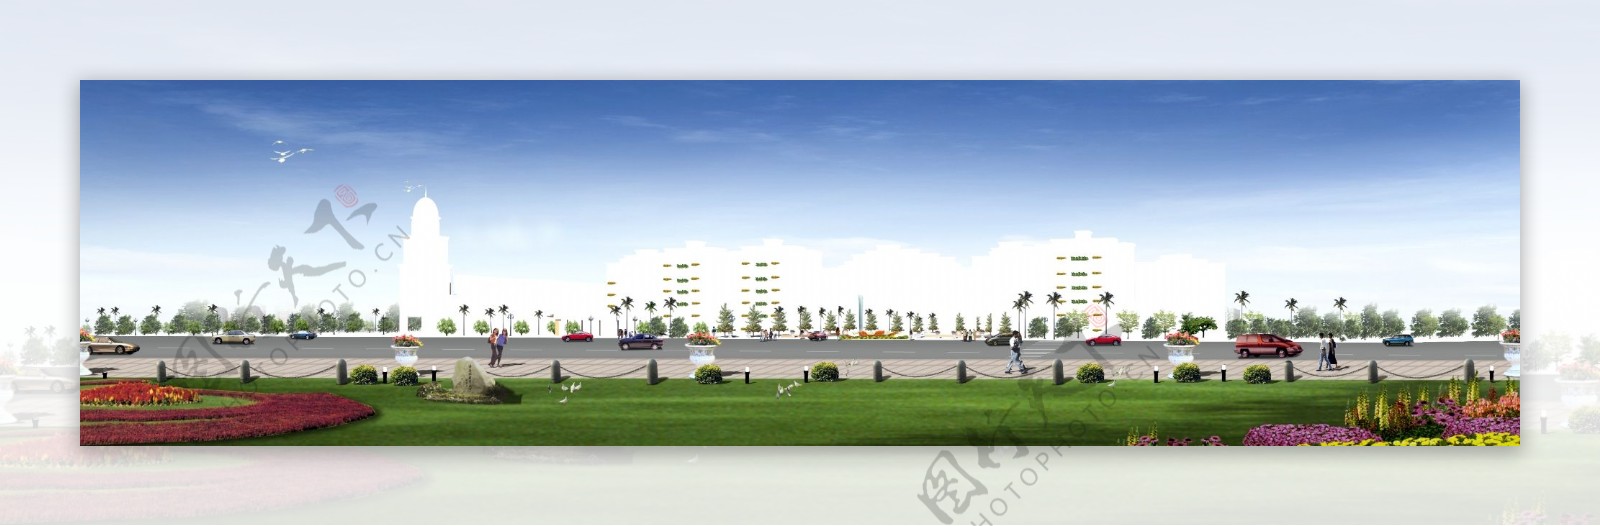 广场绿化环境设计073图片